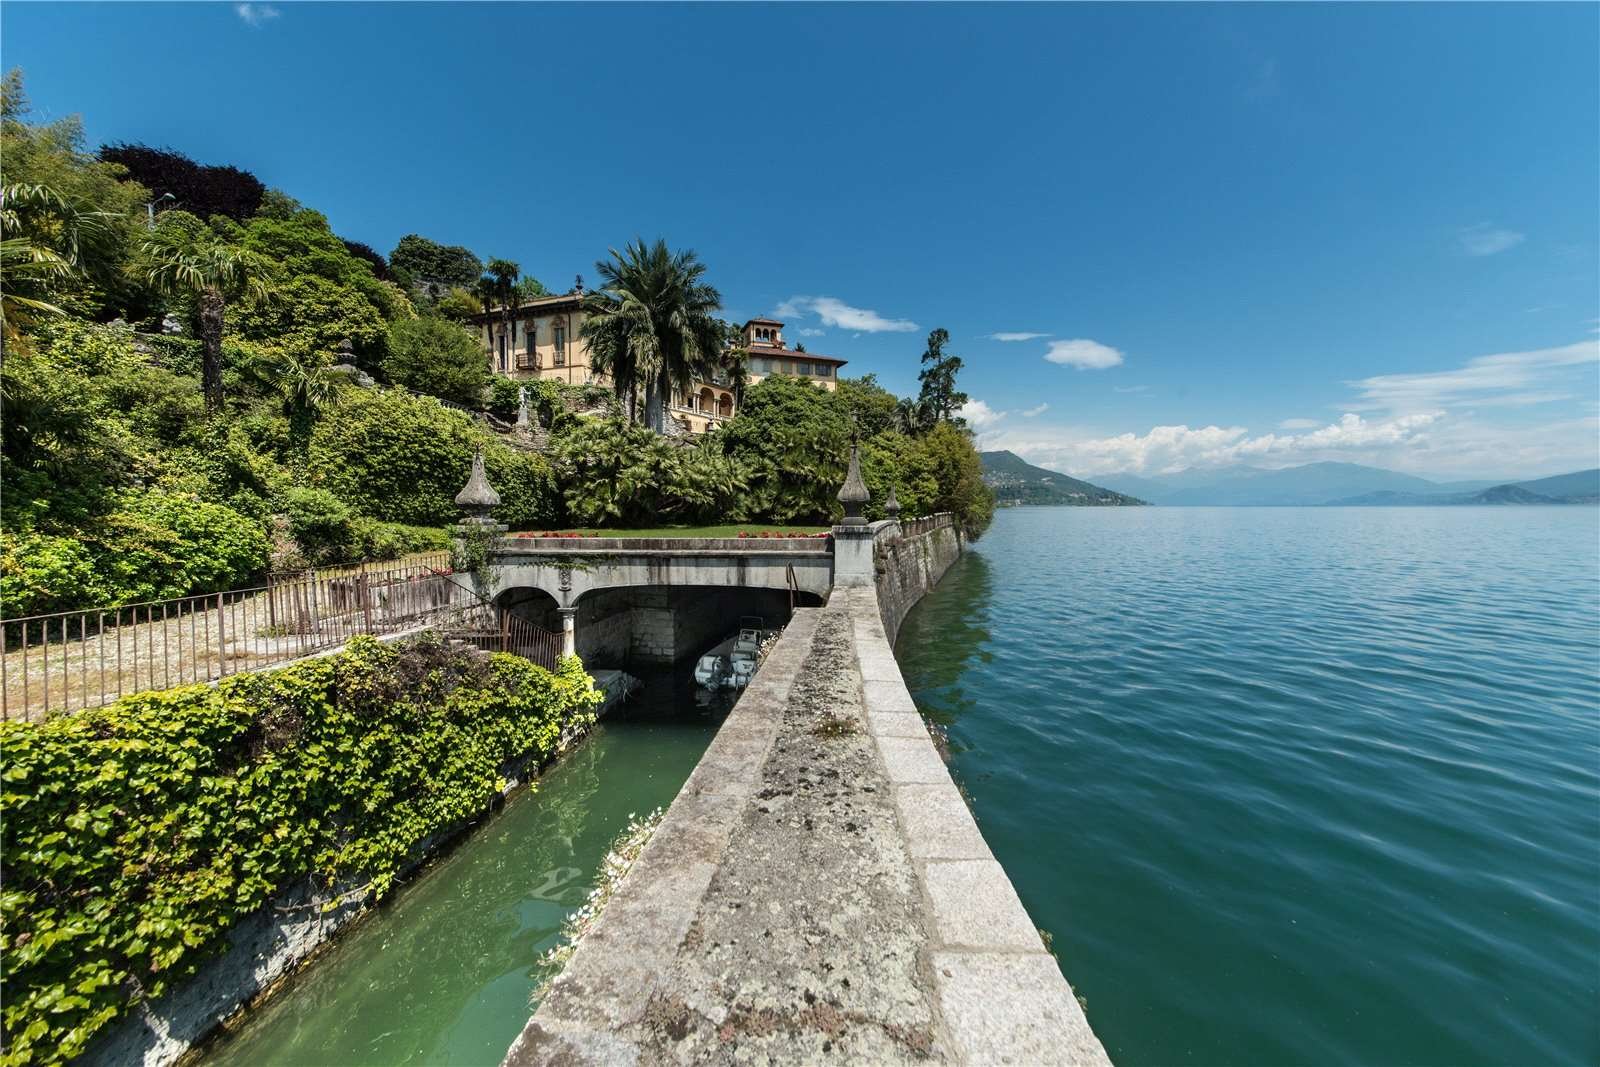 Francis YorkVilla L'Eremitaggio: Historic Villa On Lake Maggiore 14.jpg